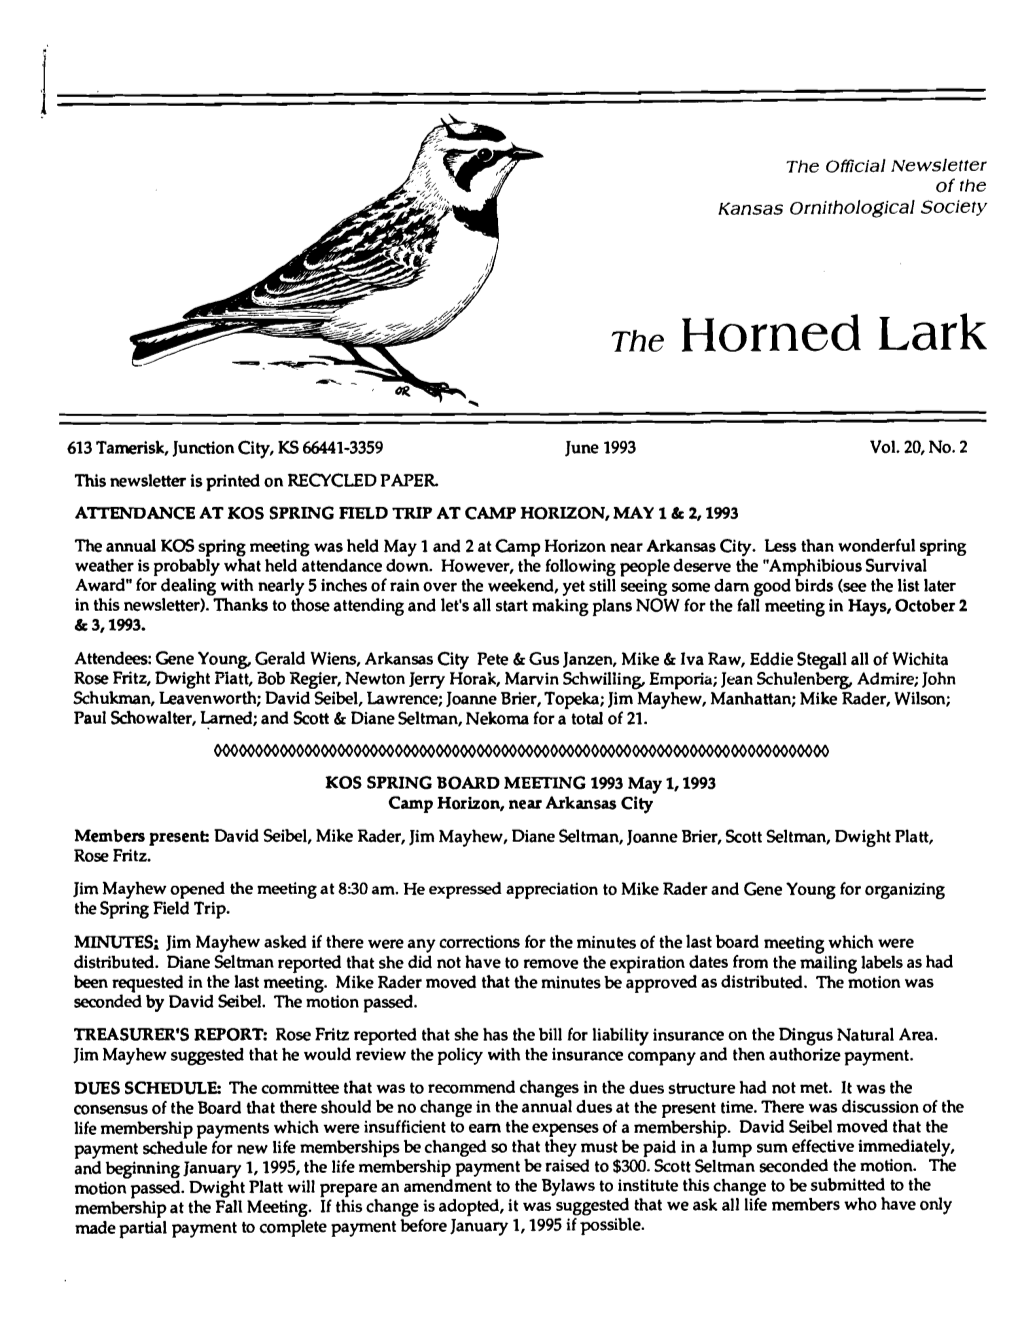 The Horned Lark